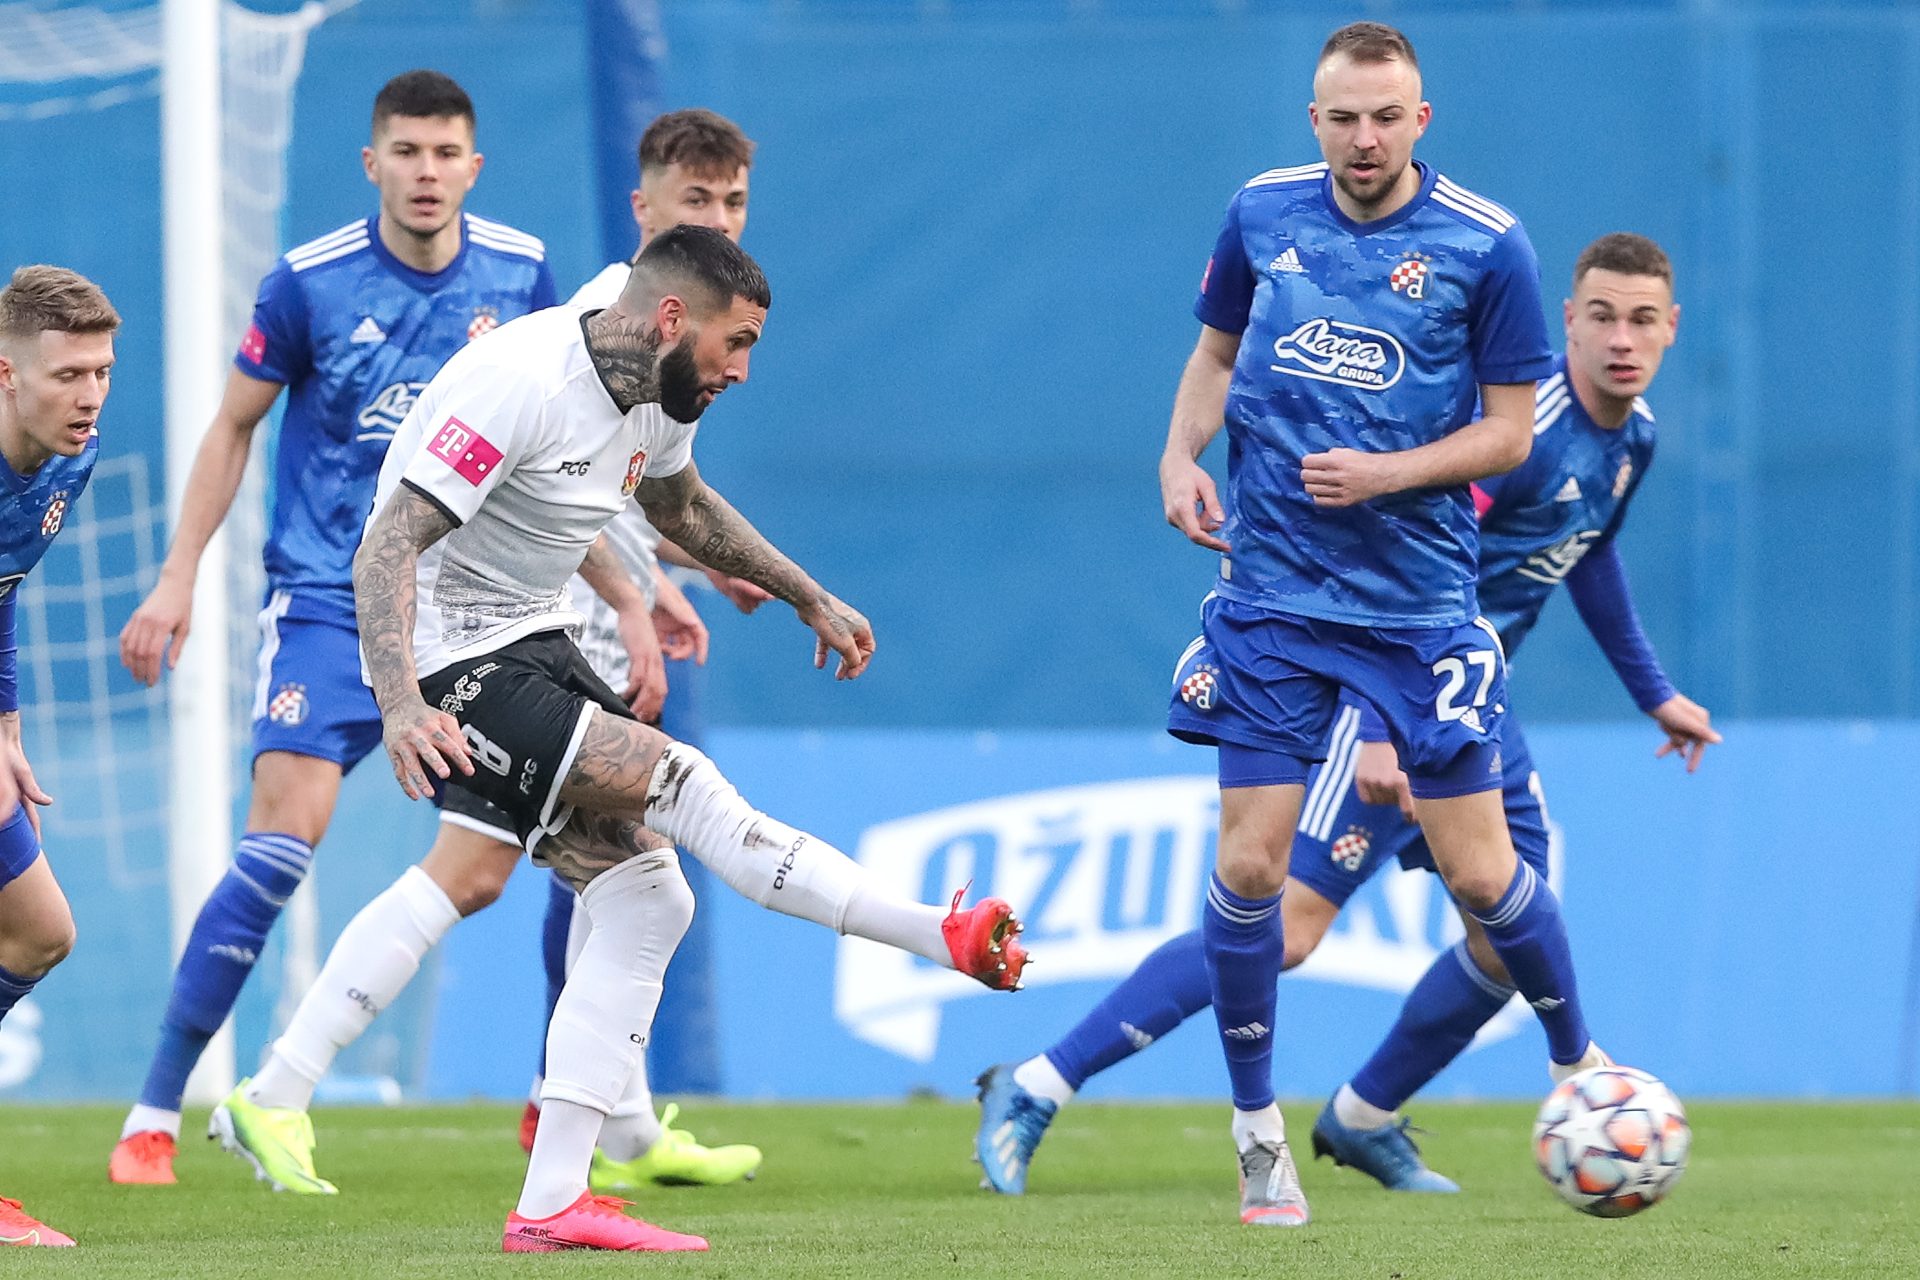 Poraz i teška ozljeda Suka: Dinamo - Gorica 1-0